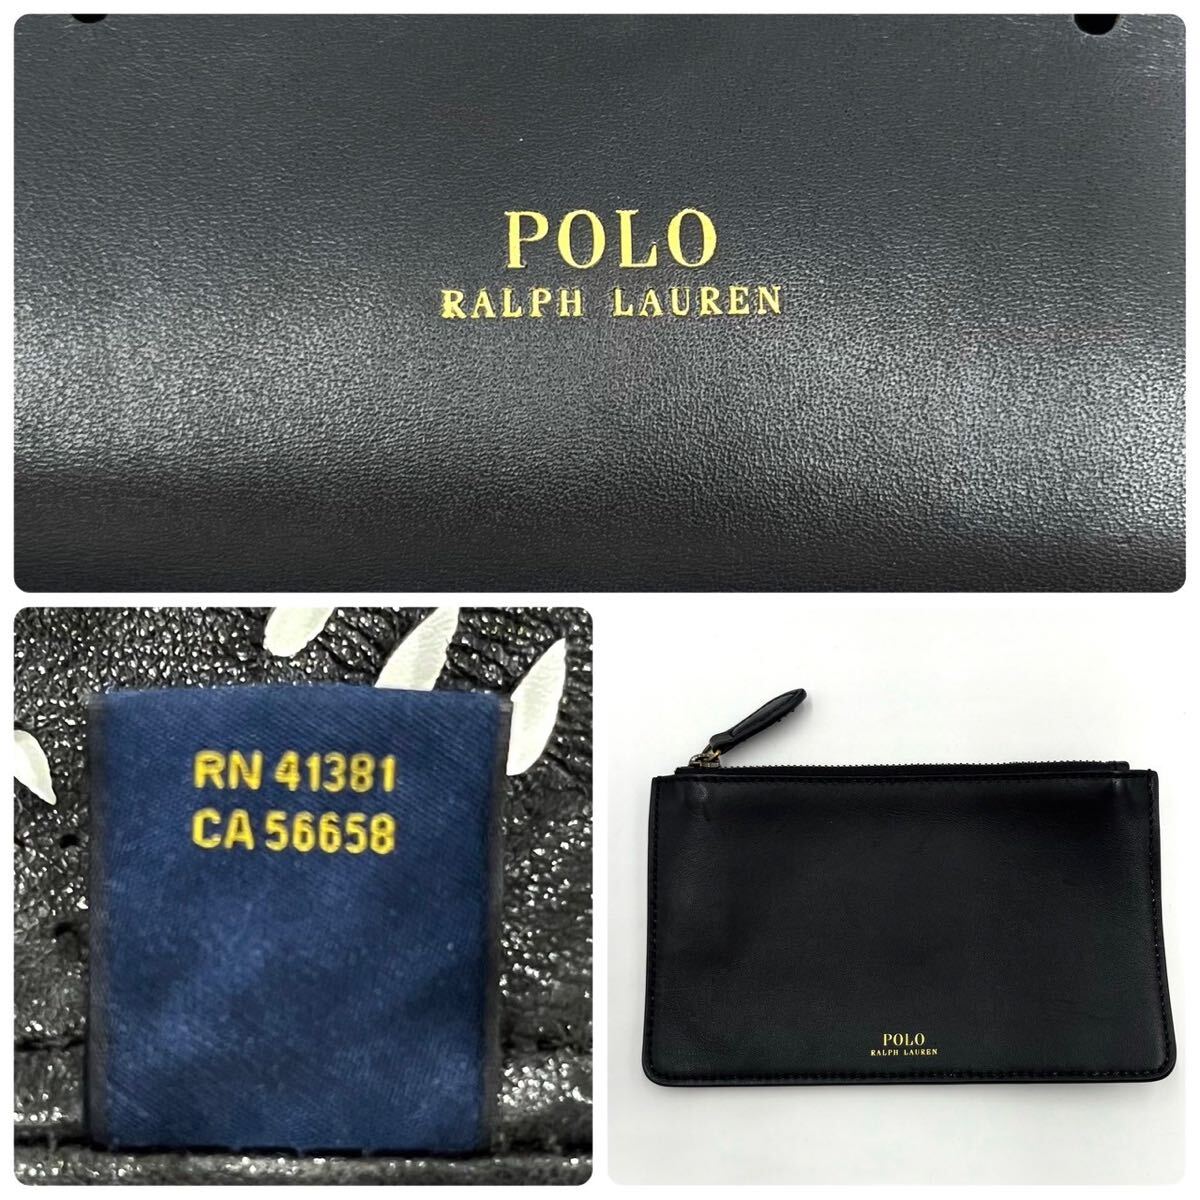 1 иен / превосходный товар / редкий дизайн * Polo Ralph Lauren POLO RALPH LAUREN большая сумка бизнес плечо ..A4 cut Work чёрная кожа действующий 